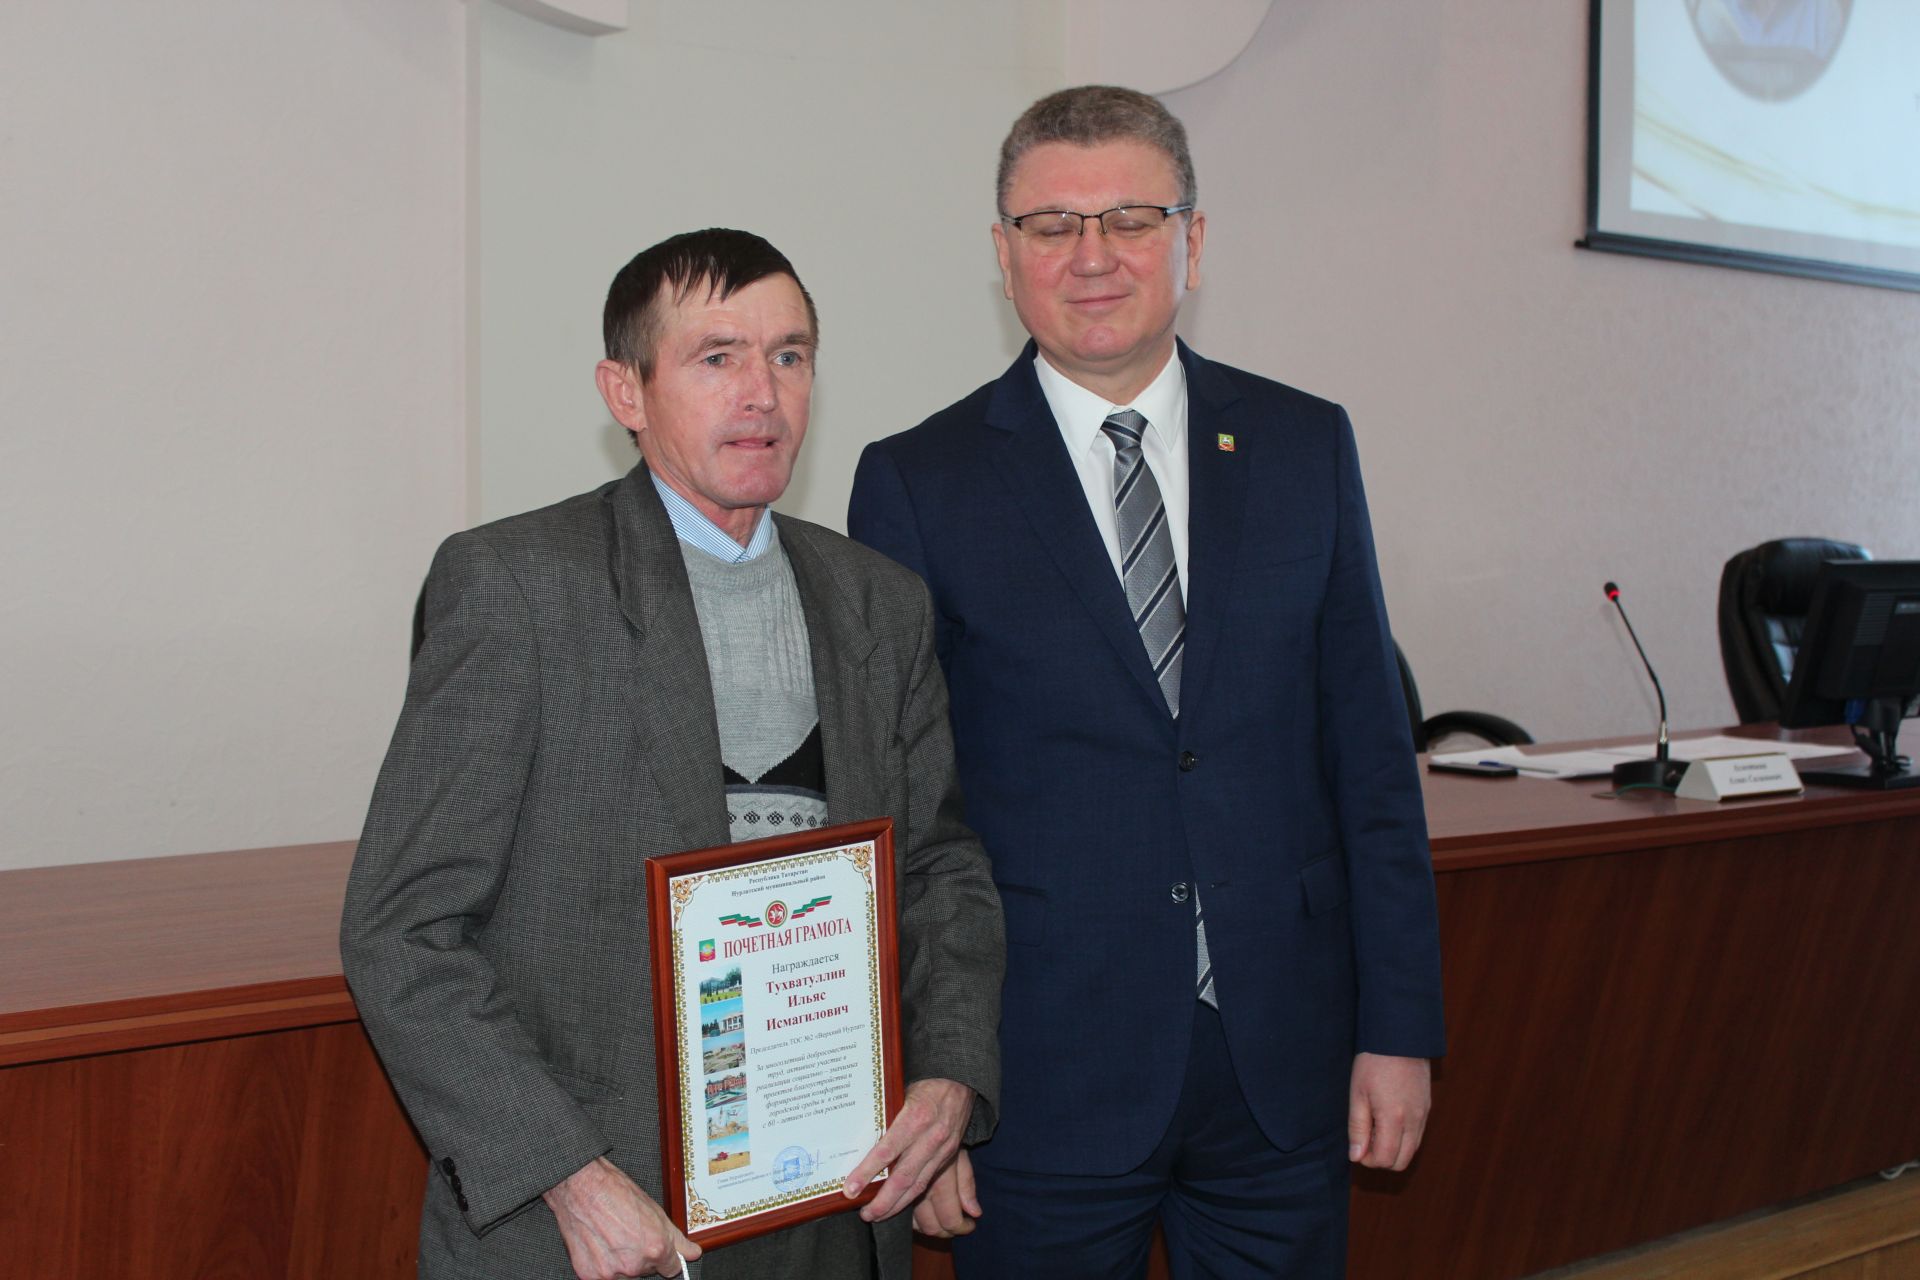 Предприятиям Нурлата вручили сертификаты, подтверждающие использование информационного знака «100-летие Татарской АССР»